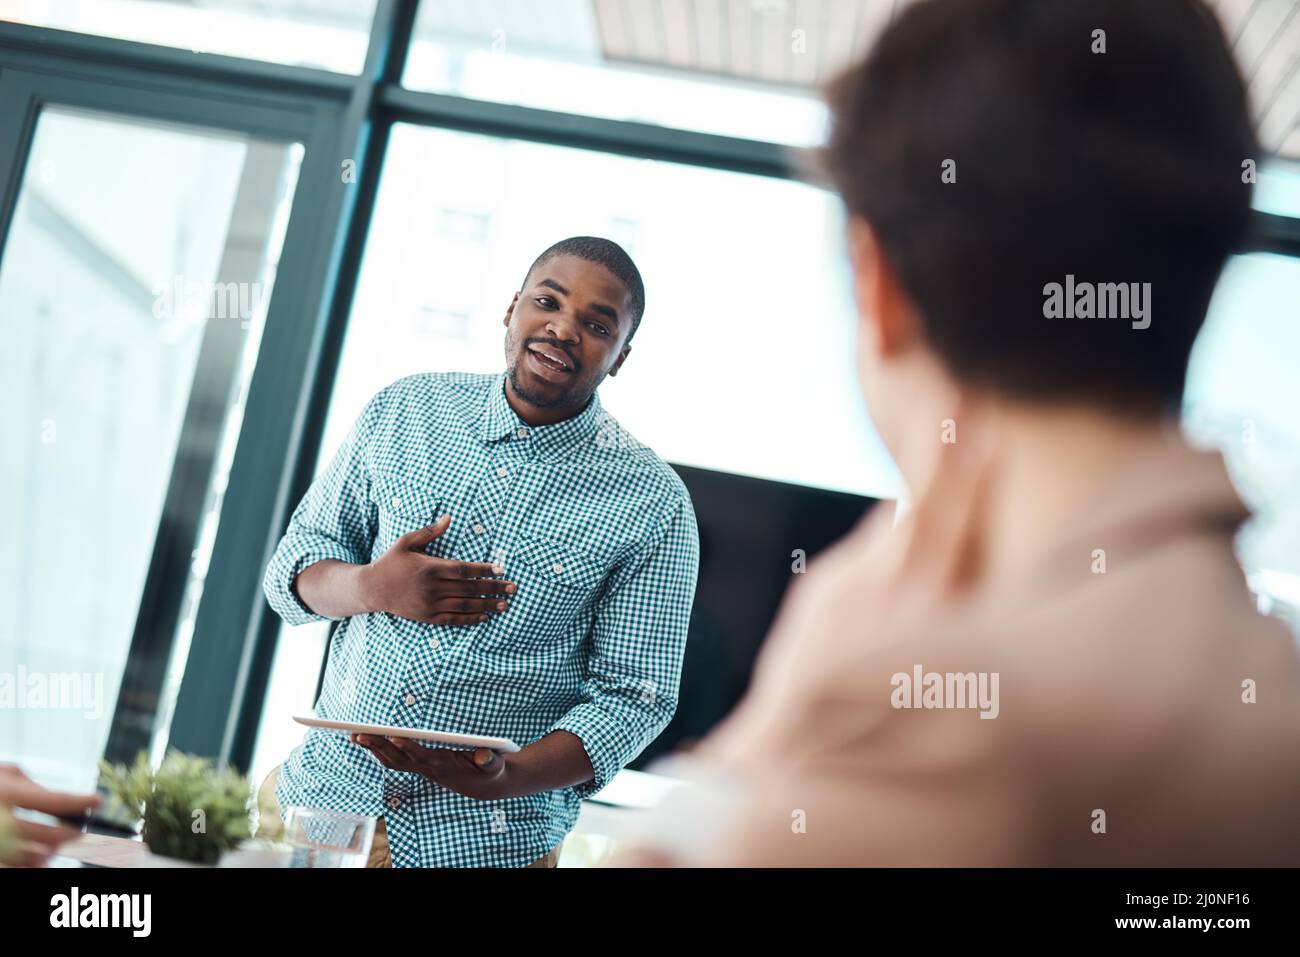 Aquí me he dado esta increíble idea Fotografía de un joven hombre de negocios que hace una presentación a sus colegas en una oficina. Foto de stock